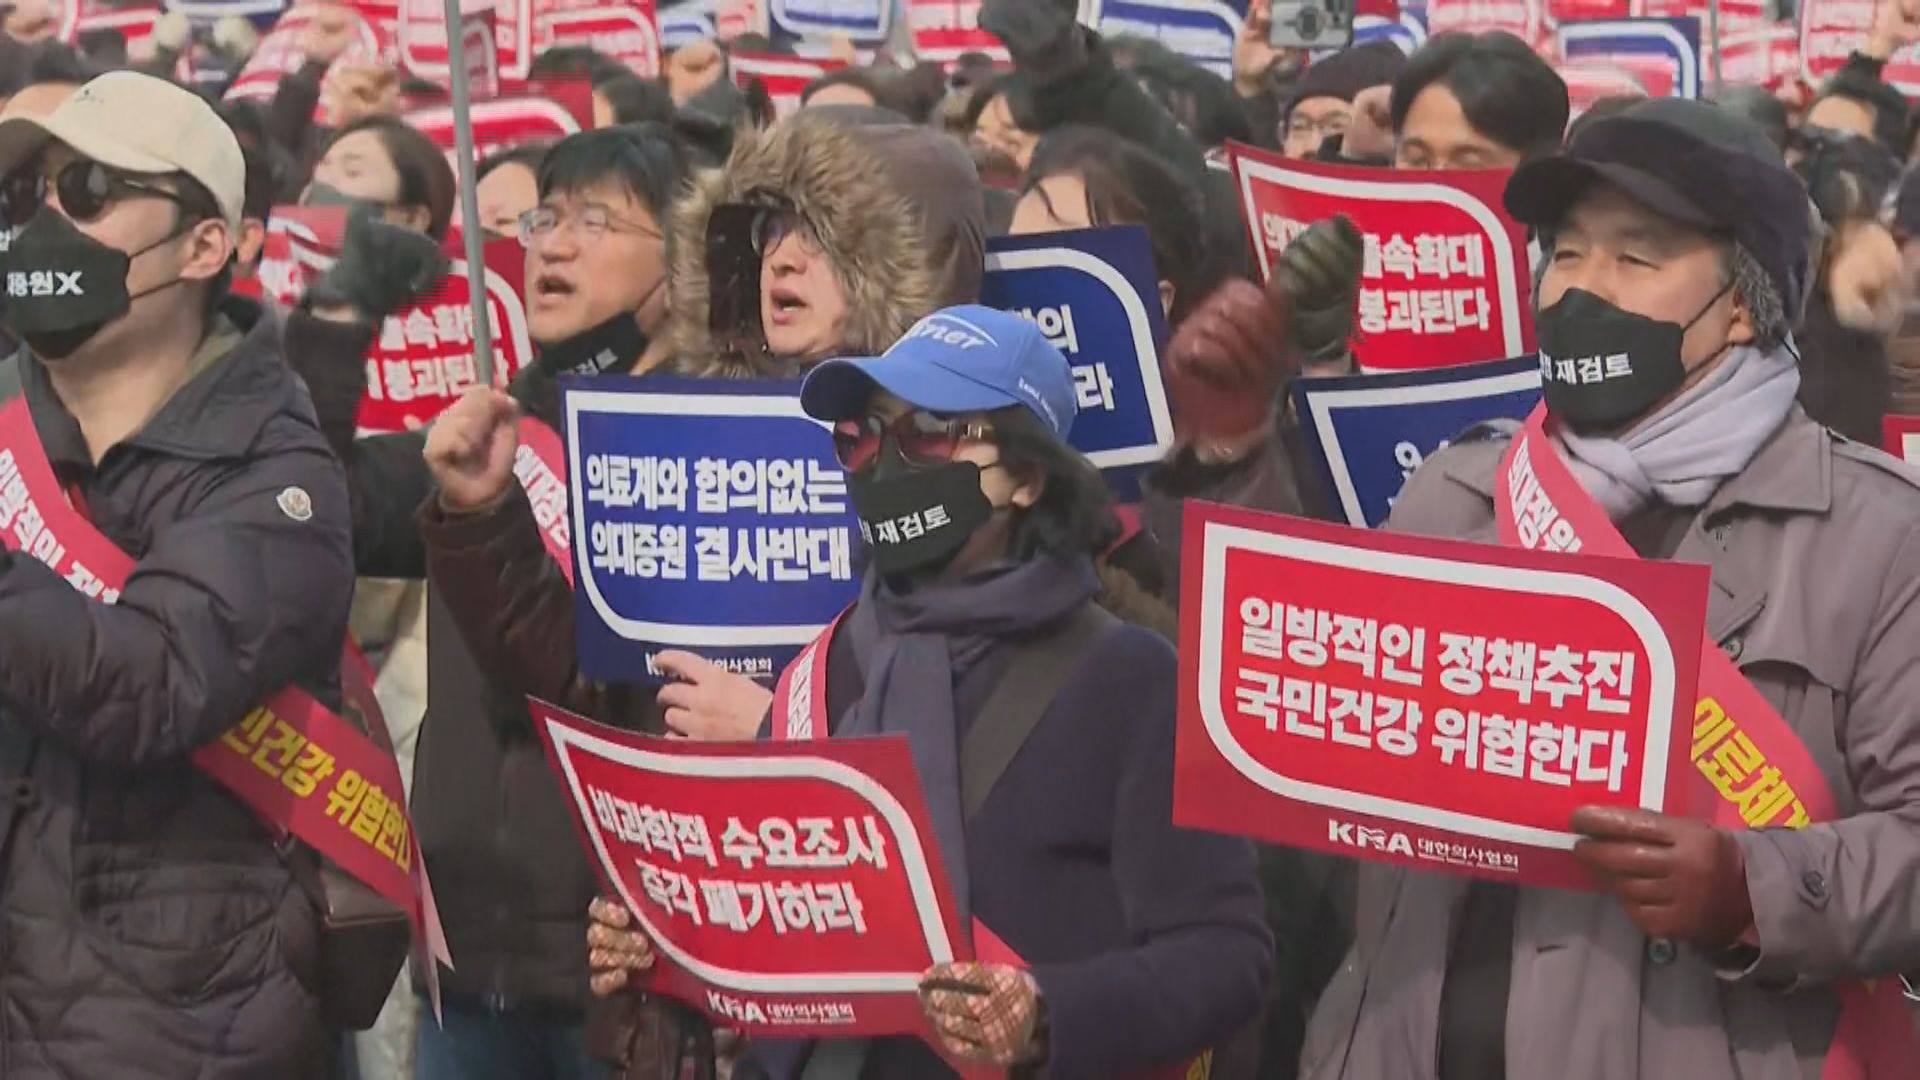 南韓醫協舉行大規模集會 預示會以強硬姿態同政府抗爭